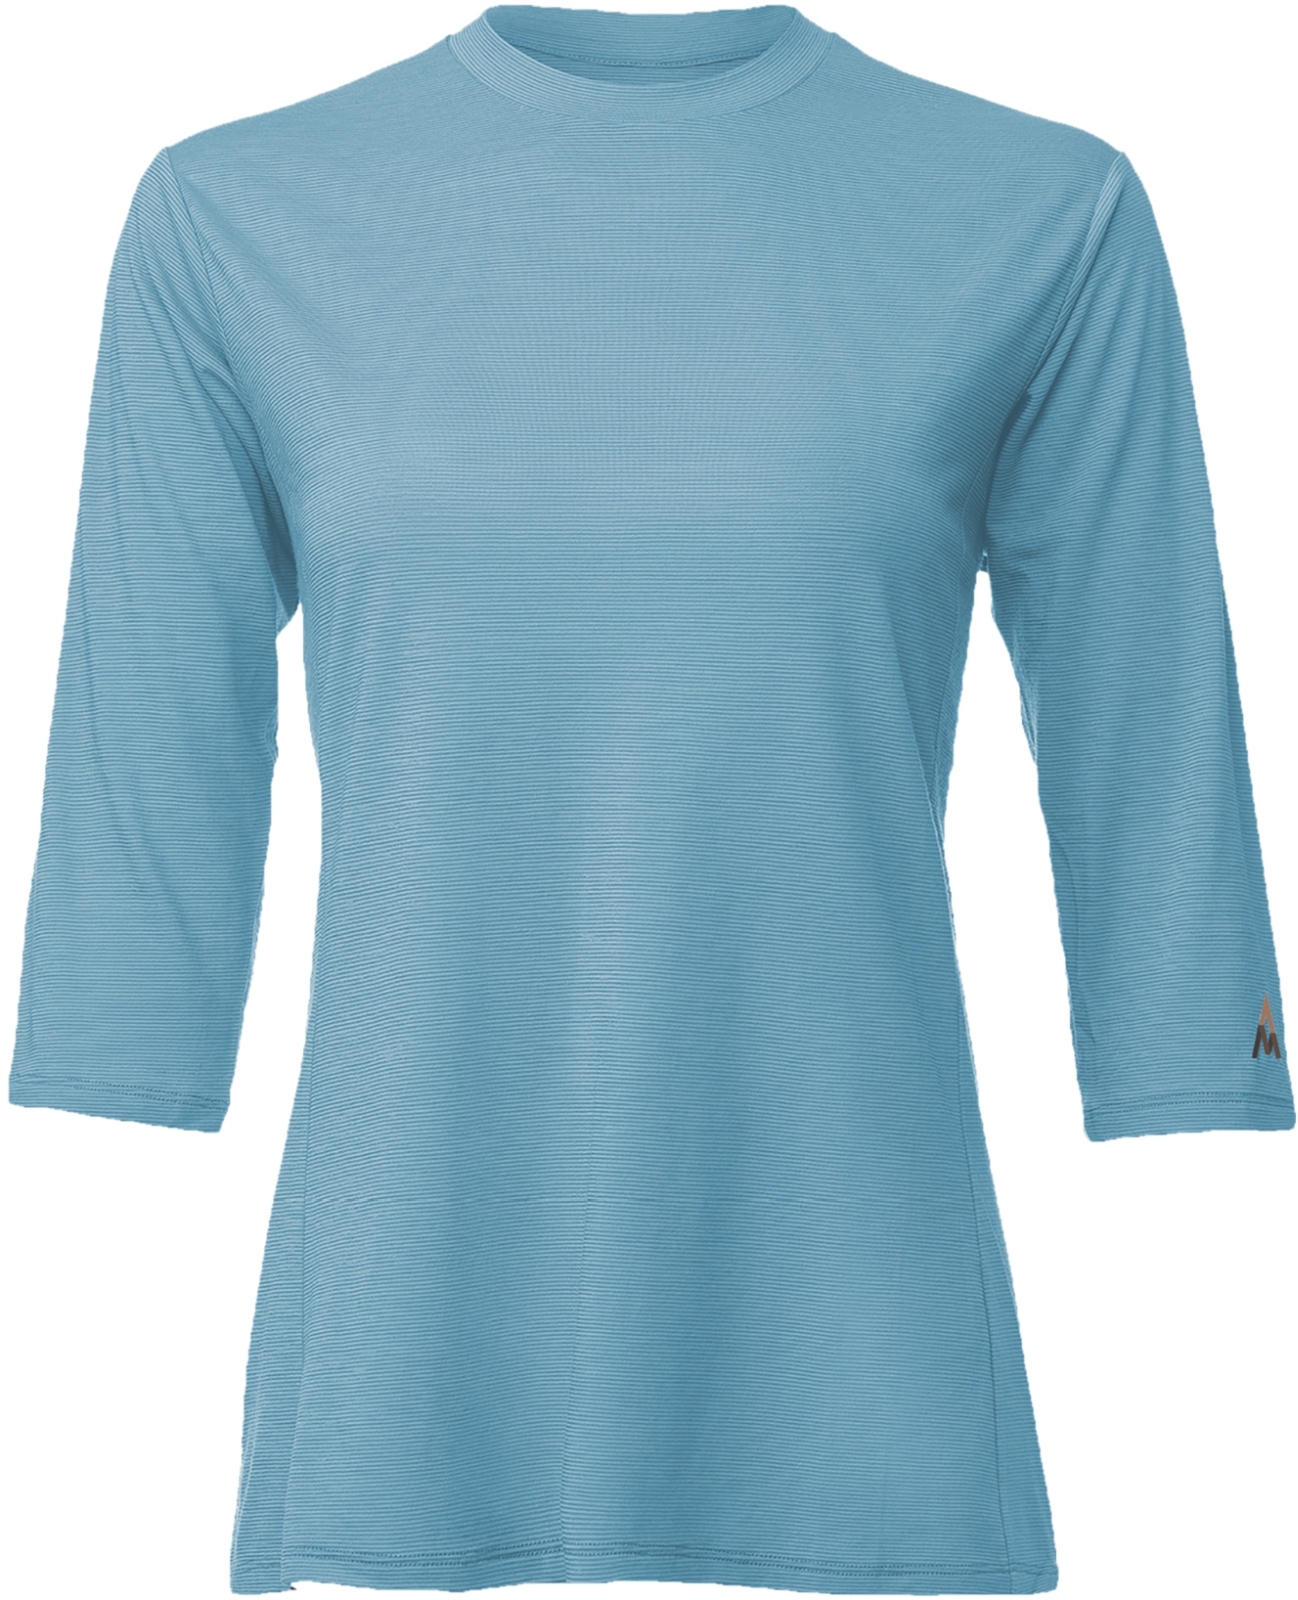 E-shop 7Mesh Desperado Shirt 3/4 Women's - Sky Blue M